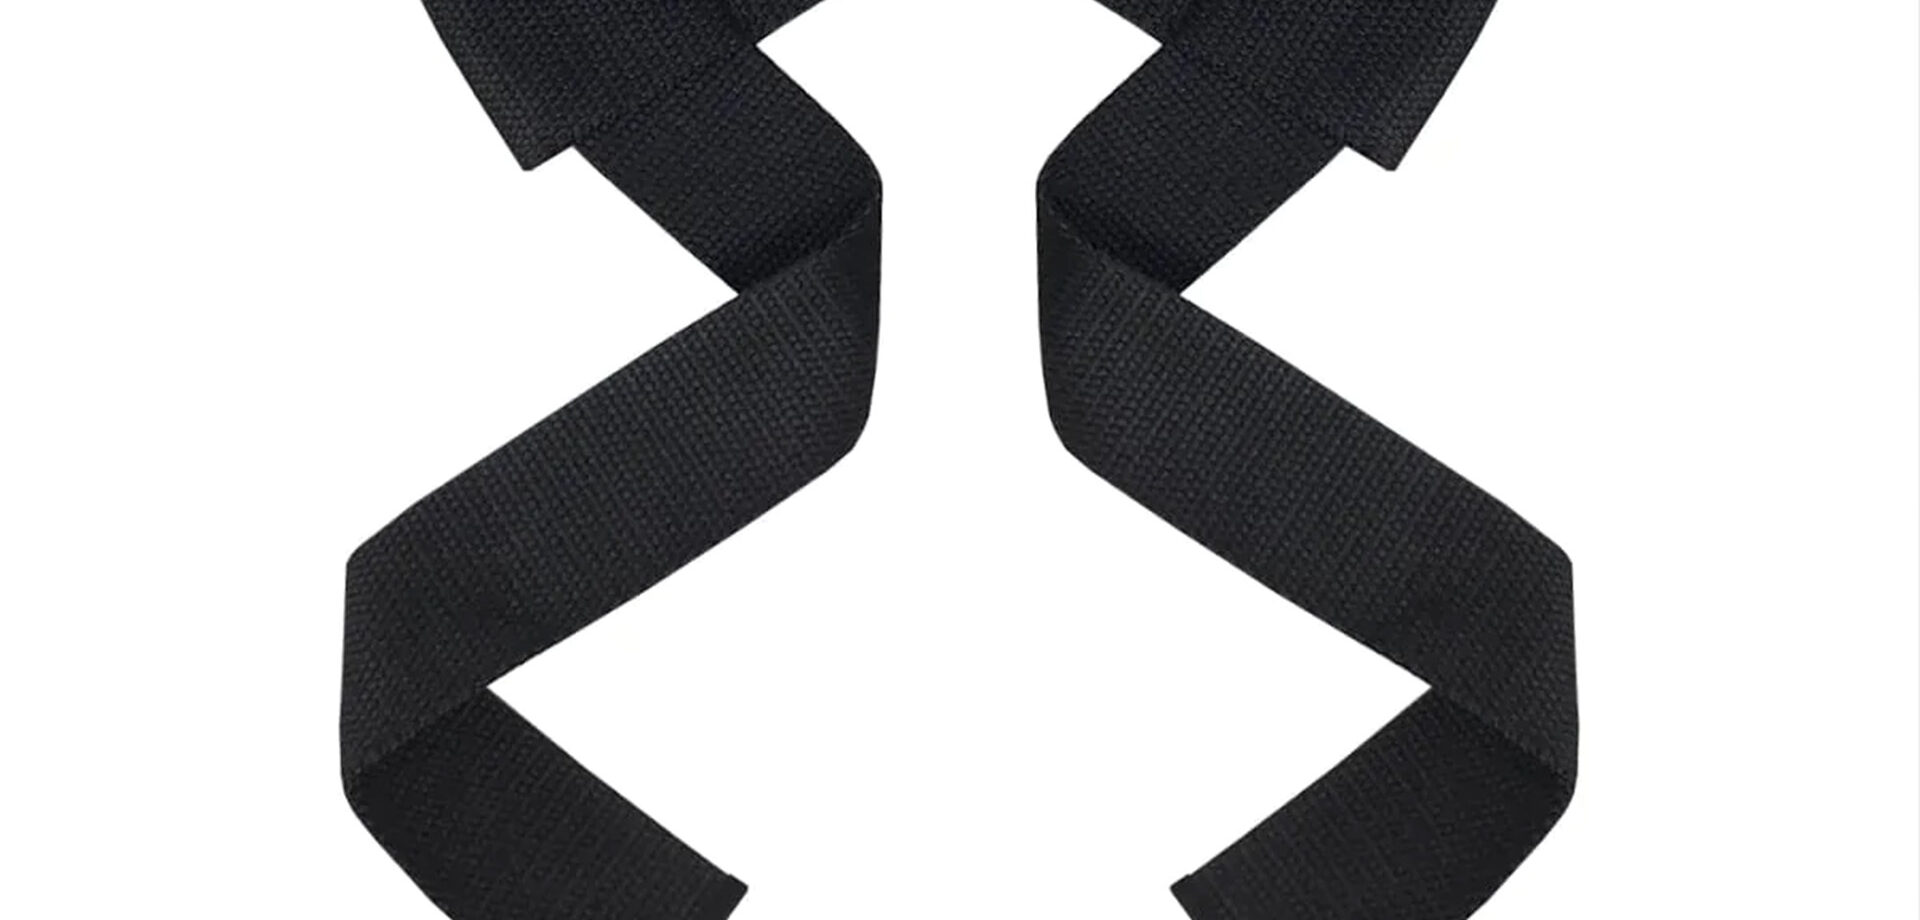 TUFF WRAPS - Tuff Lasso design cotton lifting straps